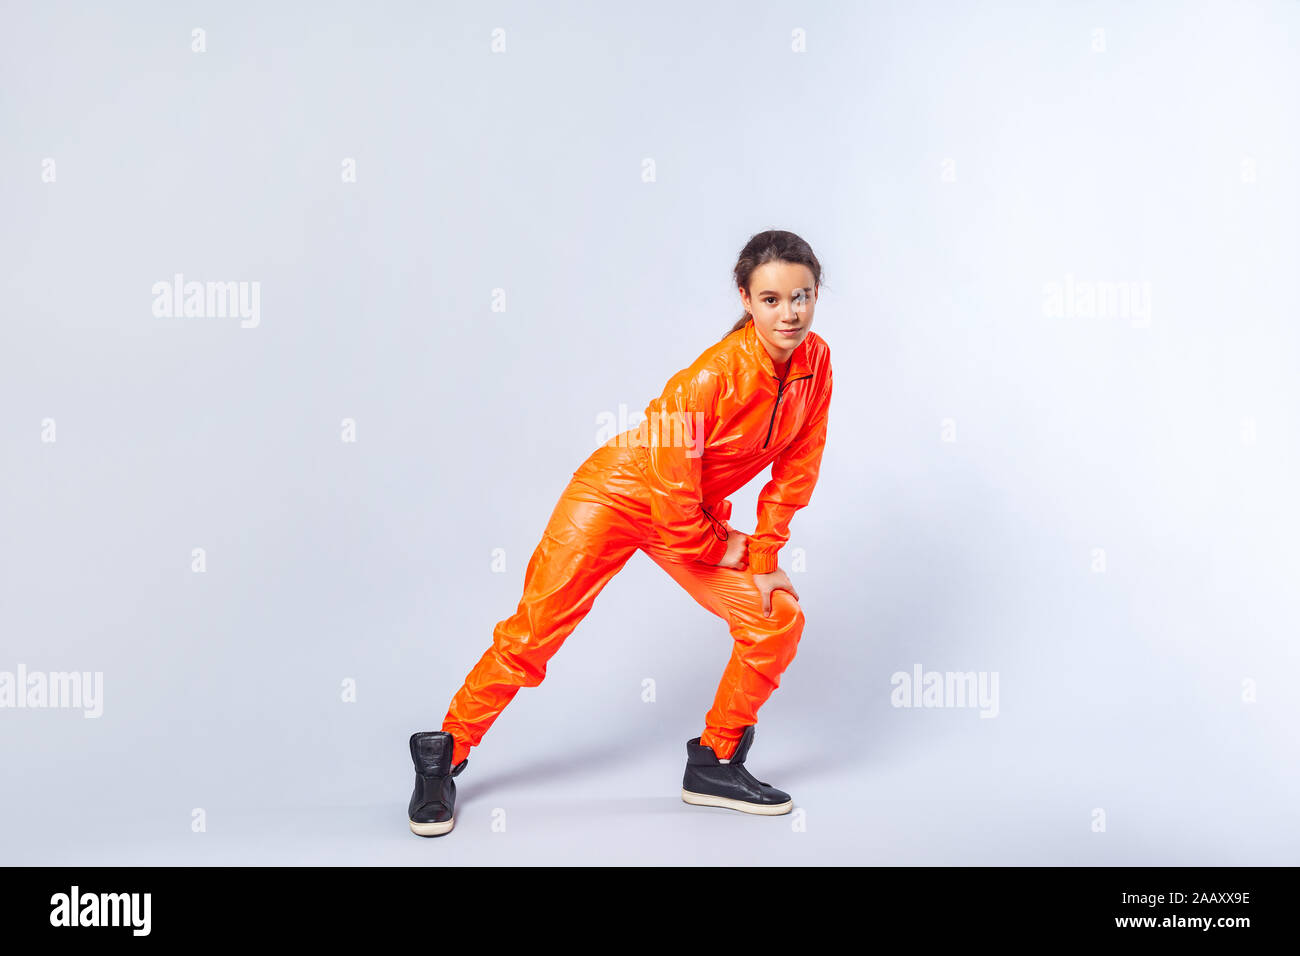 Lunghezza completa immagine di energica ragazza adolescente con brunette capelli luminosi da indossare tuta arancione danza, mostrando butterfly hip hop spostare, hobby activitie Foto Stock